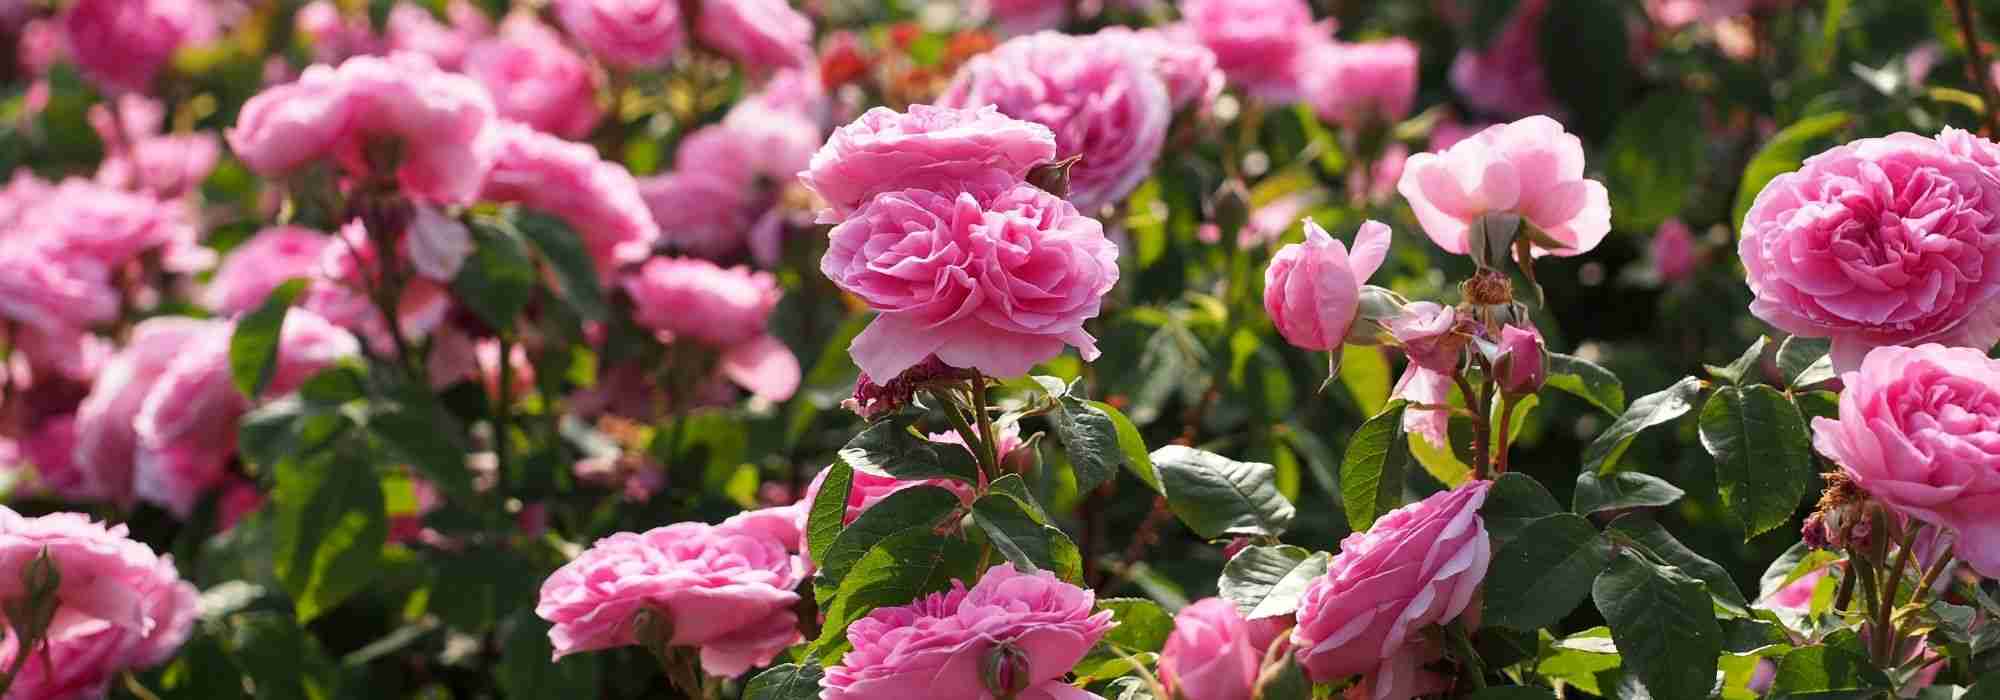 10 rosiers anglais David Austin à fleurs roses